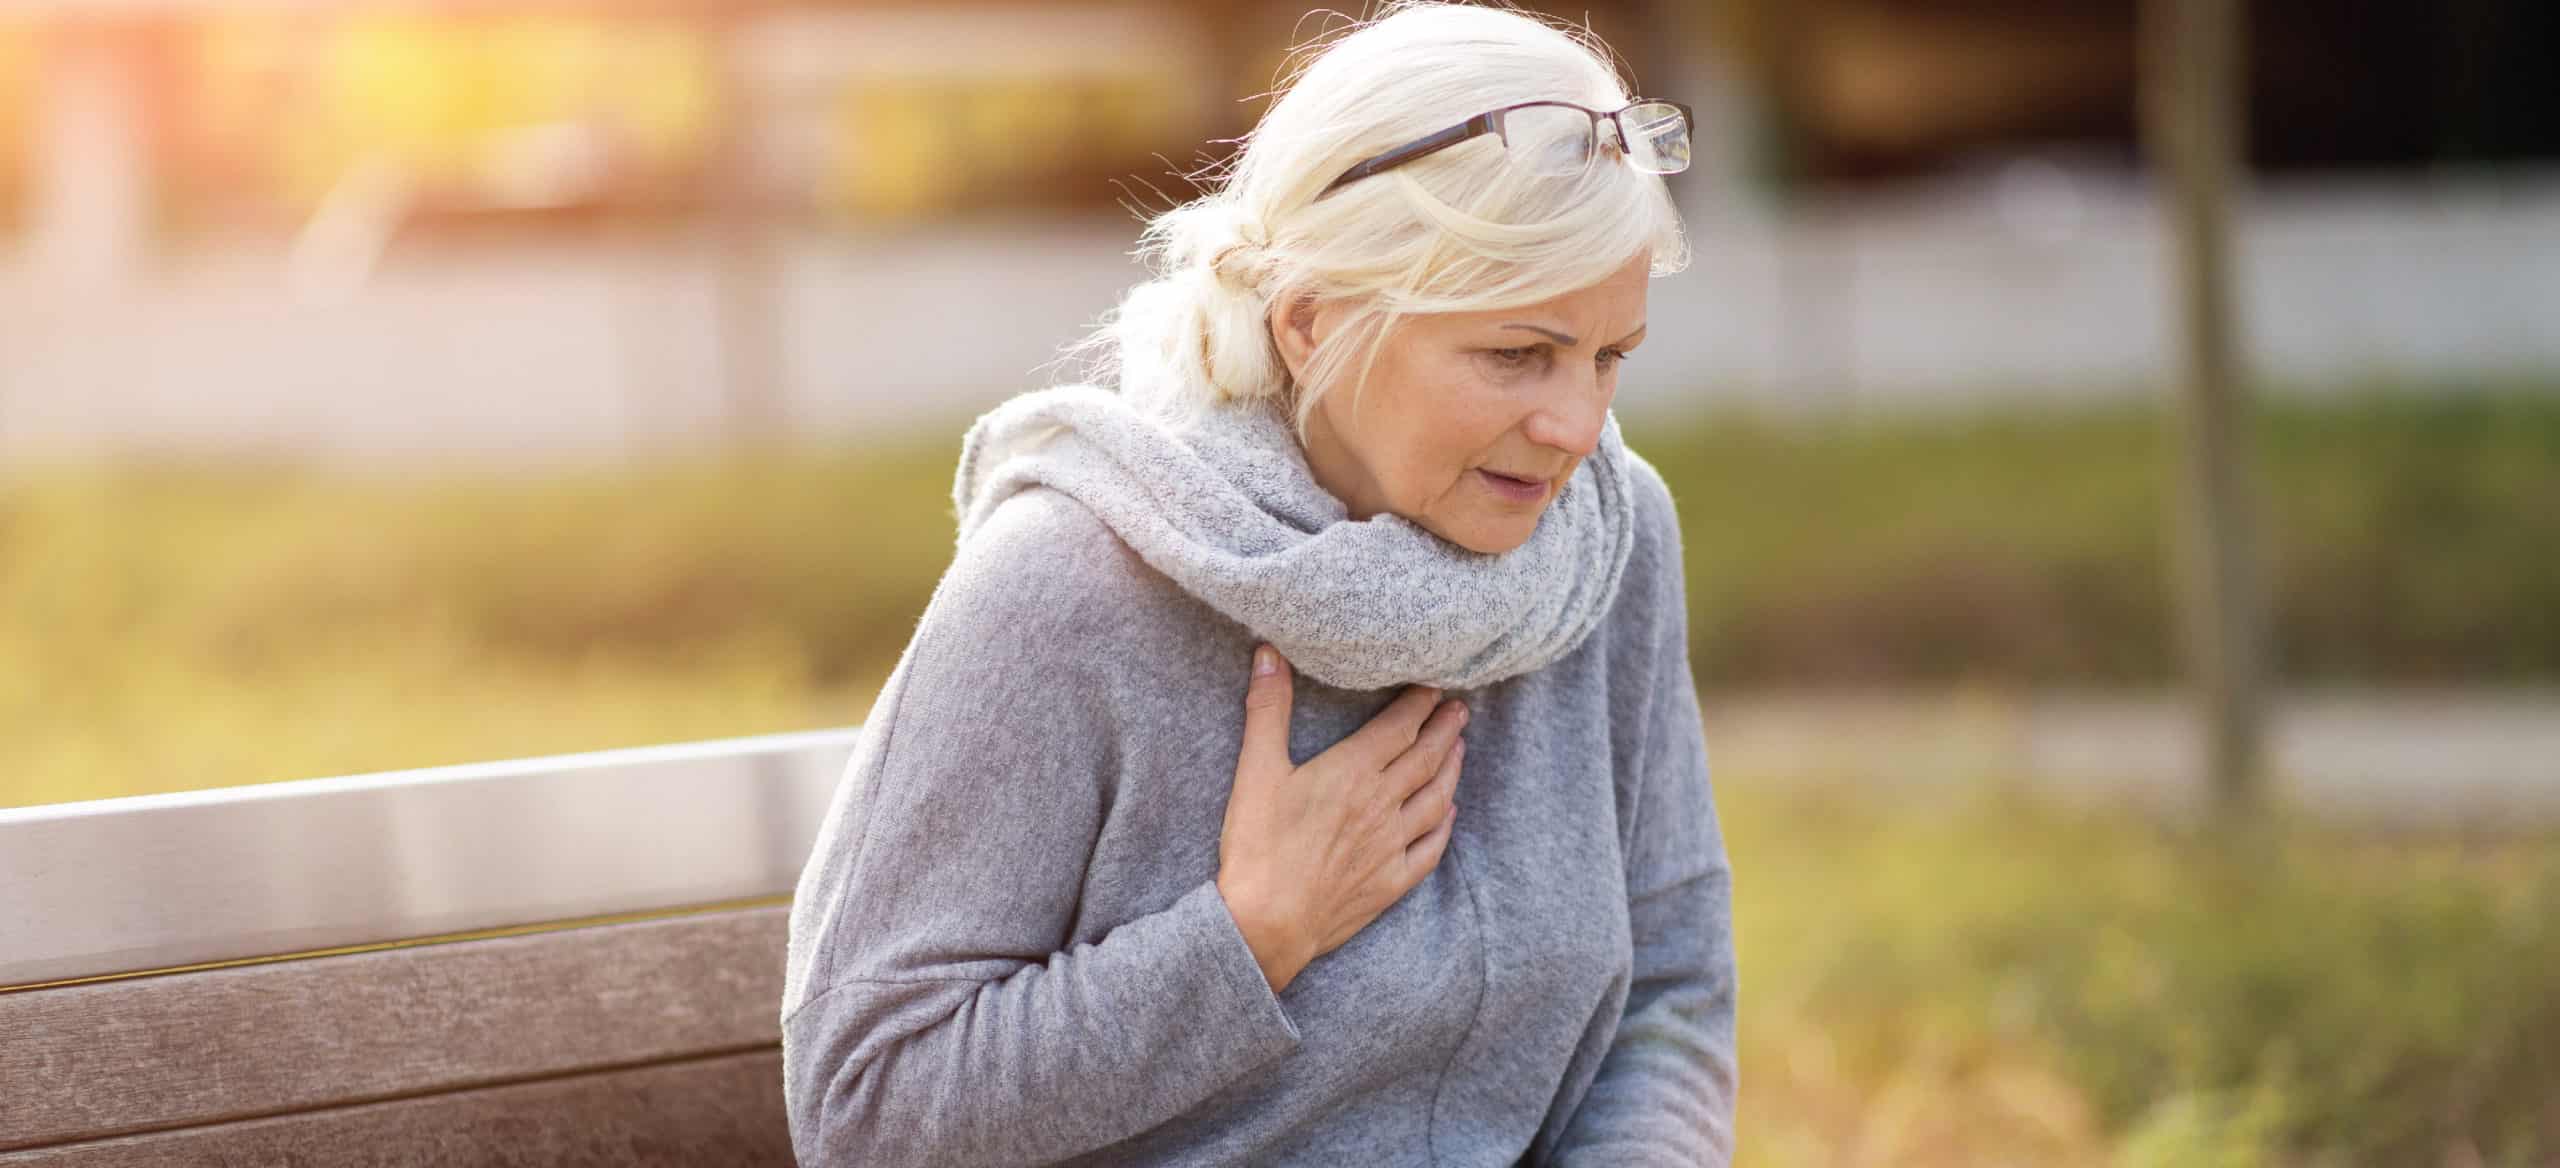 Heart disease in women - Dr. Axe